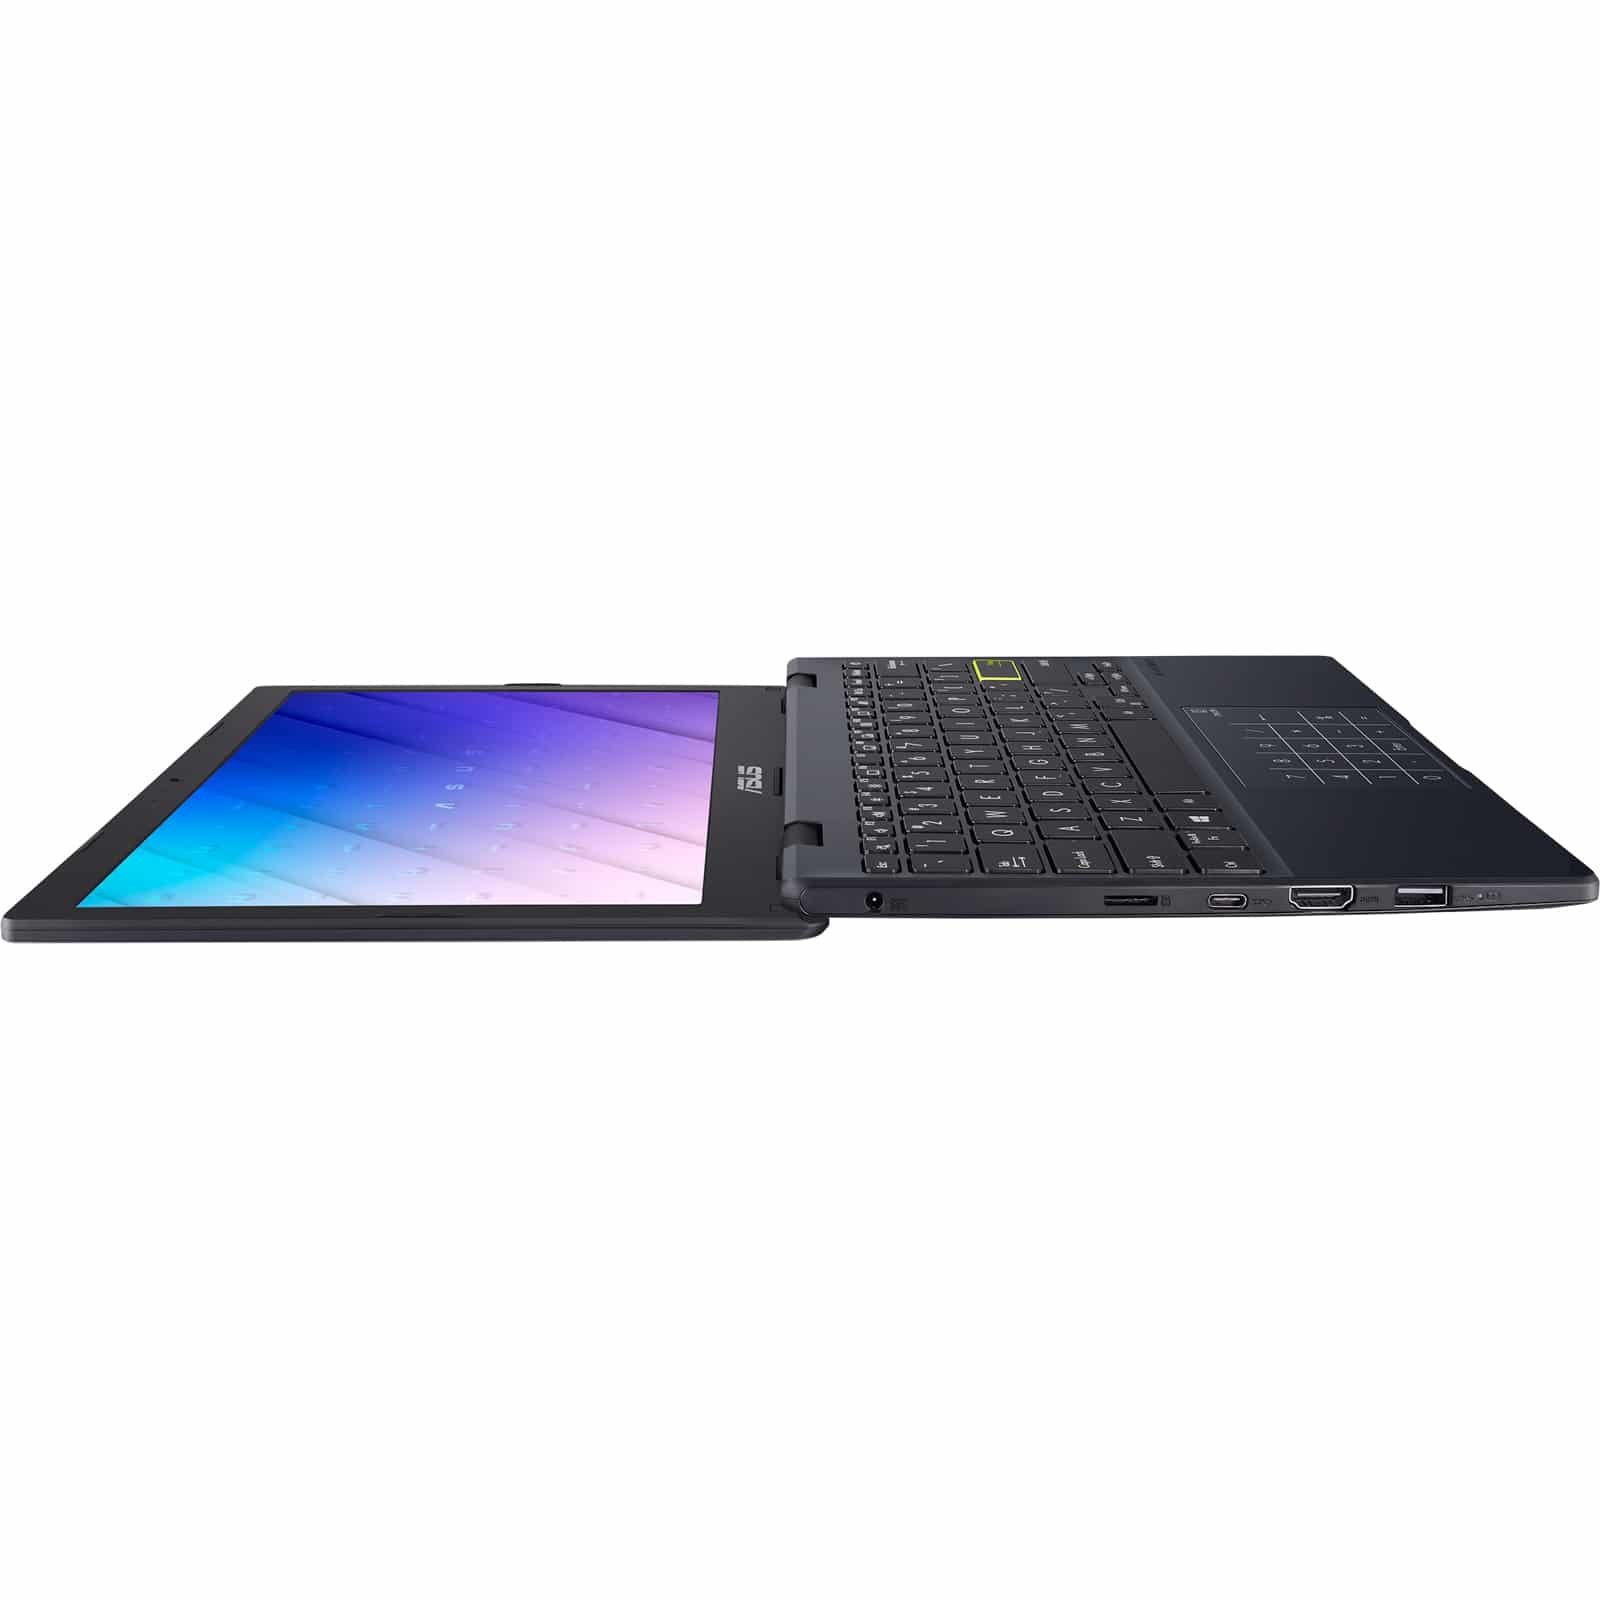 ASUS Laptop E210: laptop 11.6-inch cơ bản cho người dùng cơ bản, giá 6 triệu